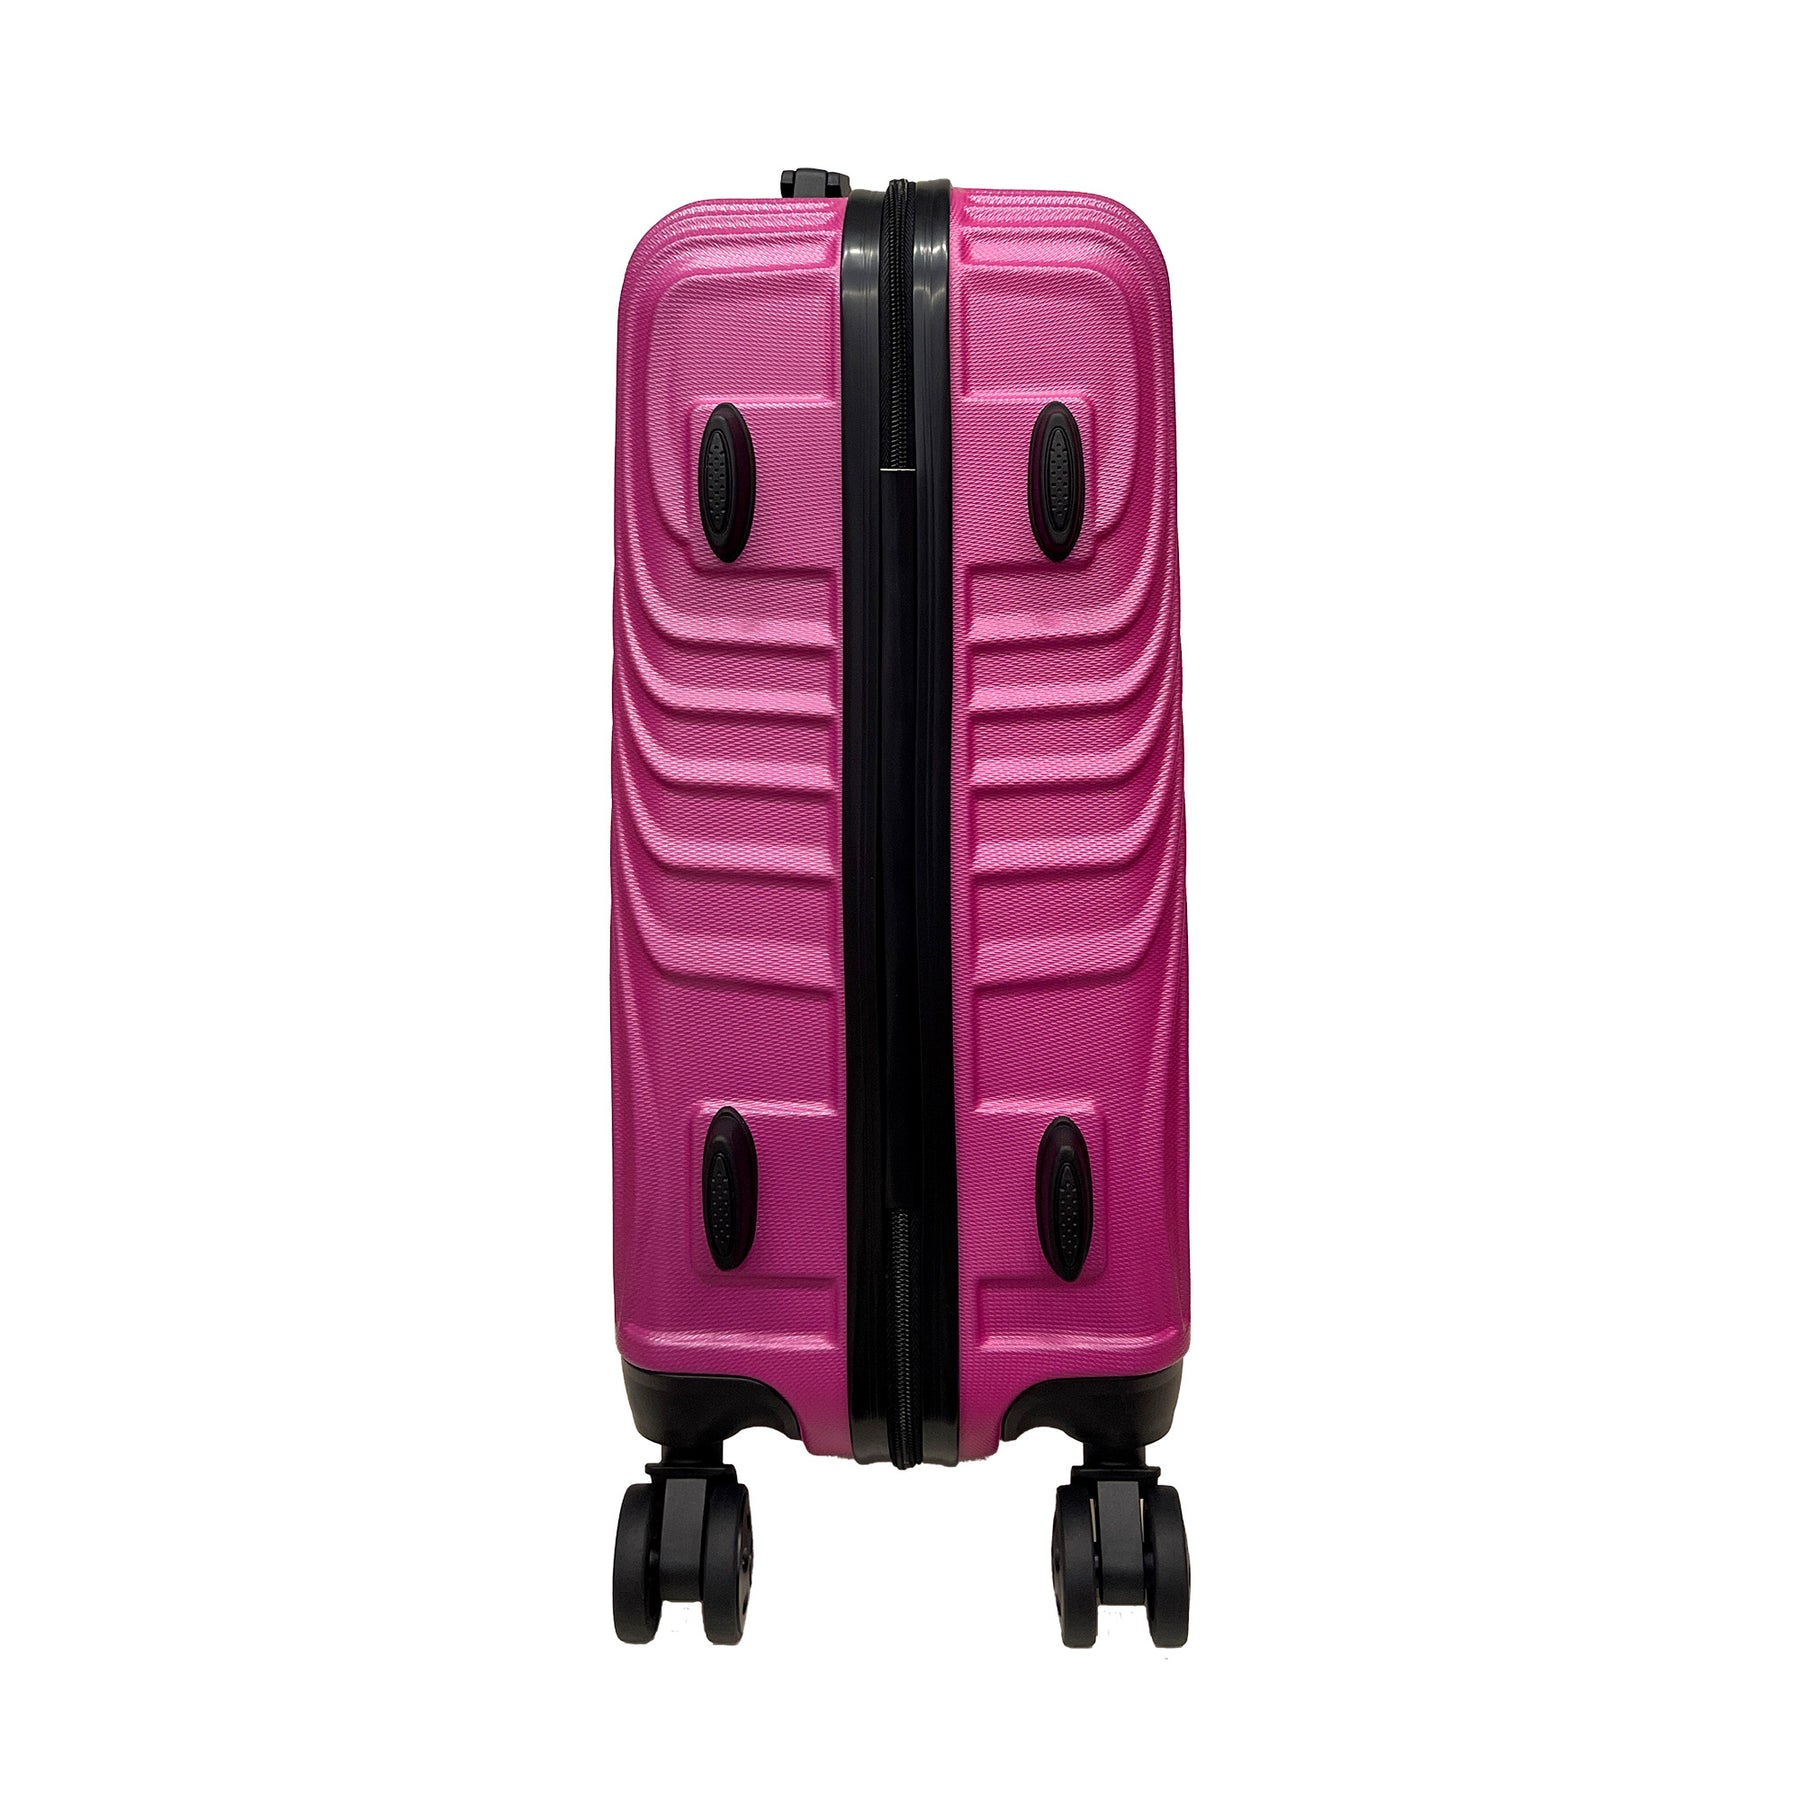 Ormi WavyLine - Duży bagaż podręczny 55x40x22,5 cm | Ultralekki z tworzywa ABS | 4 obrotowe koła 360°